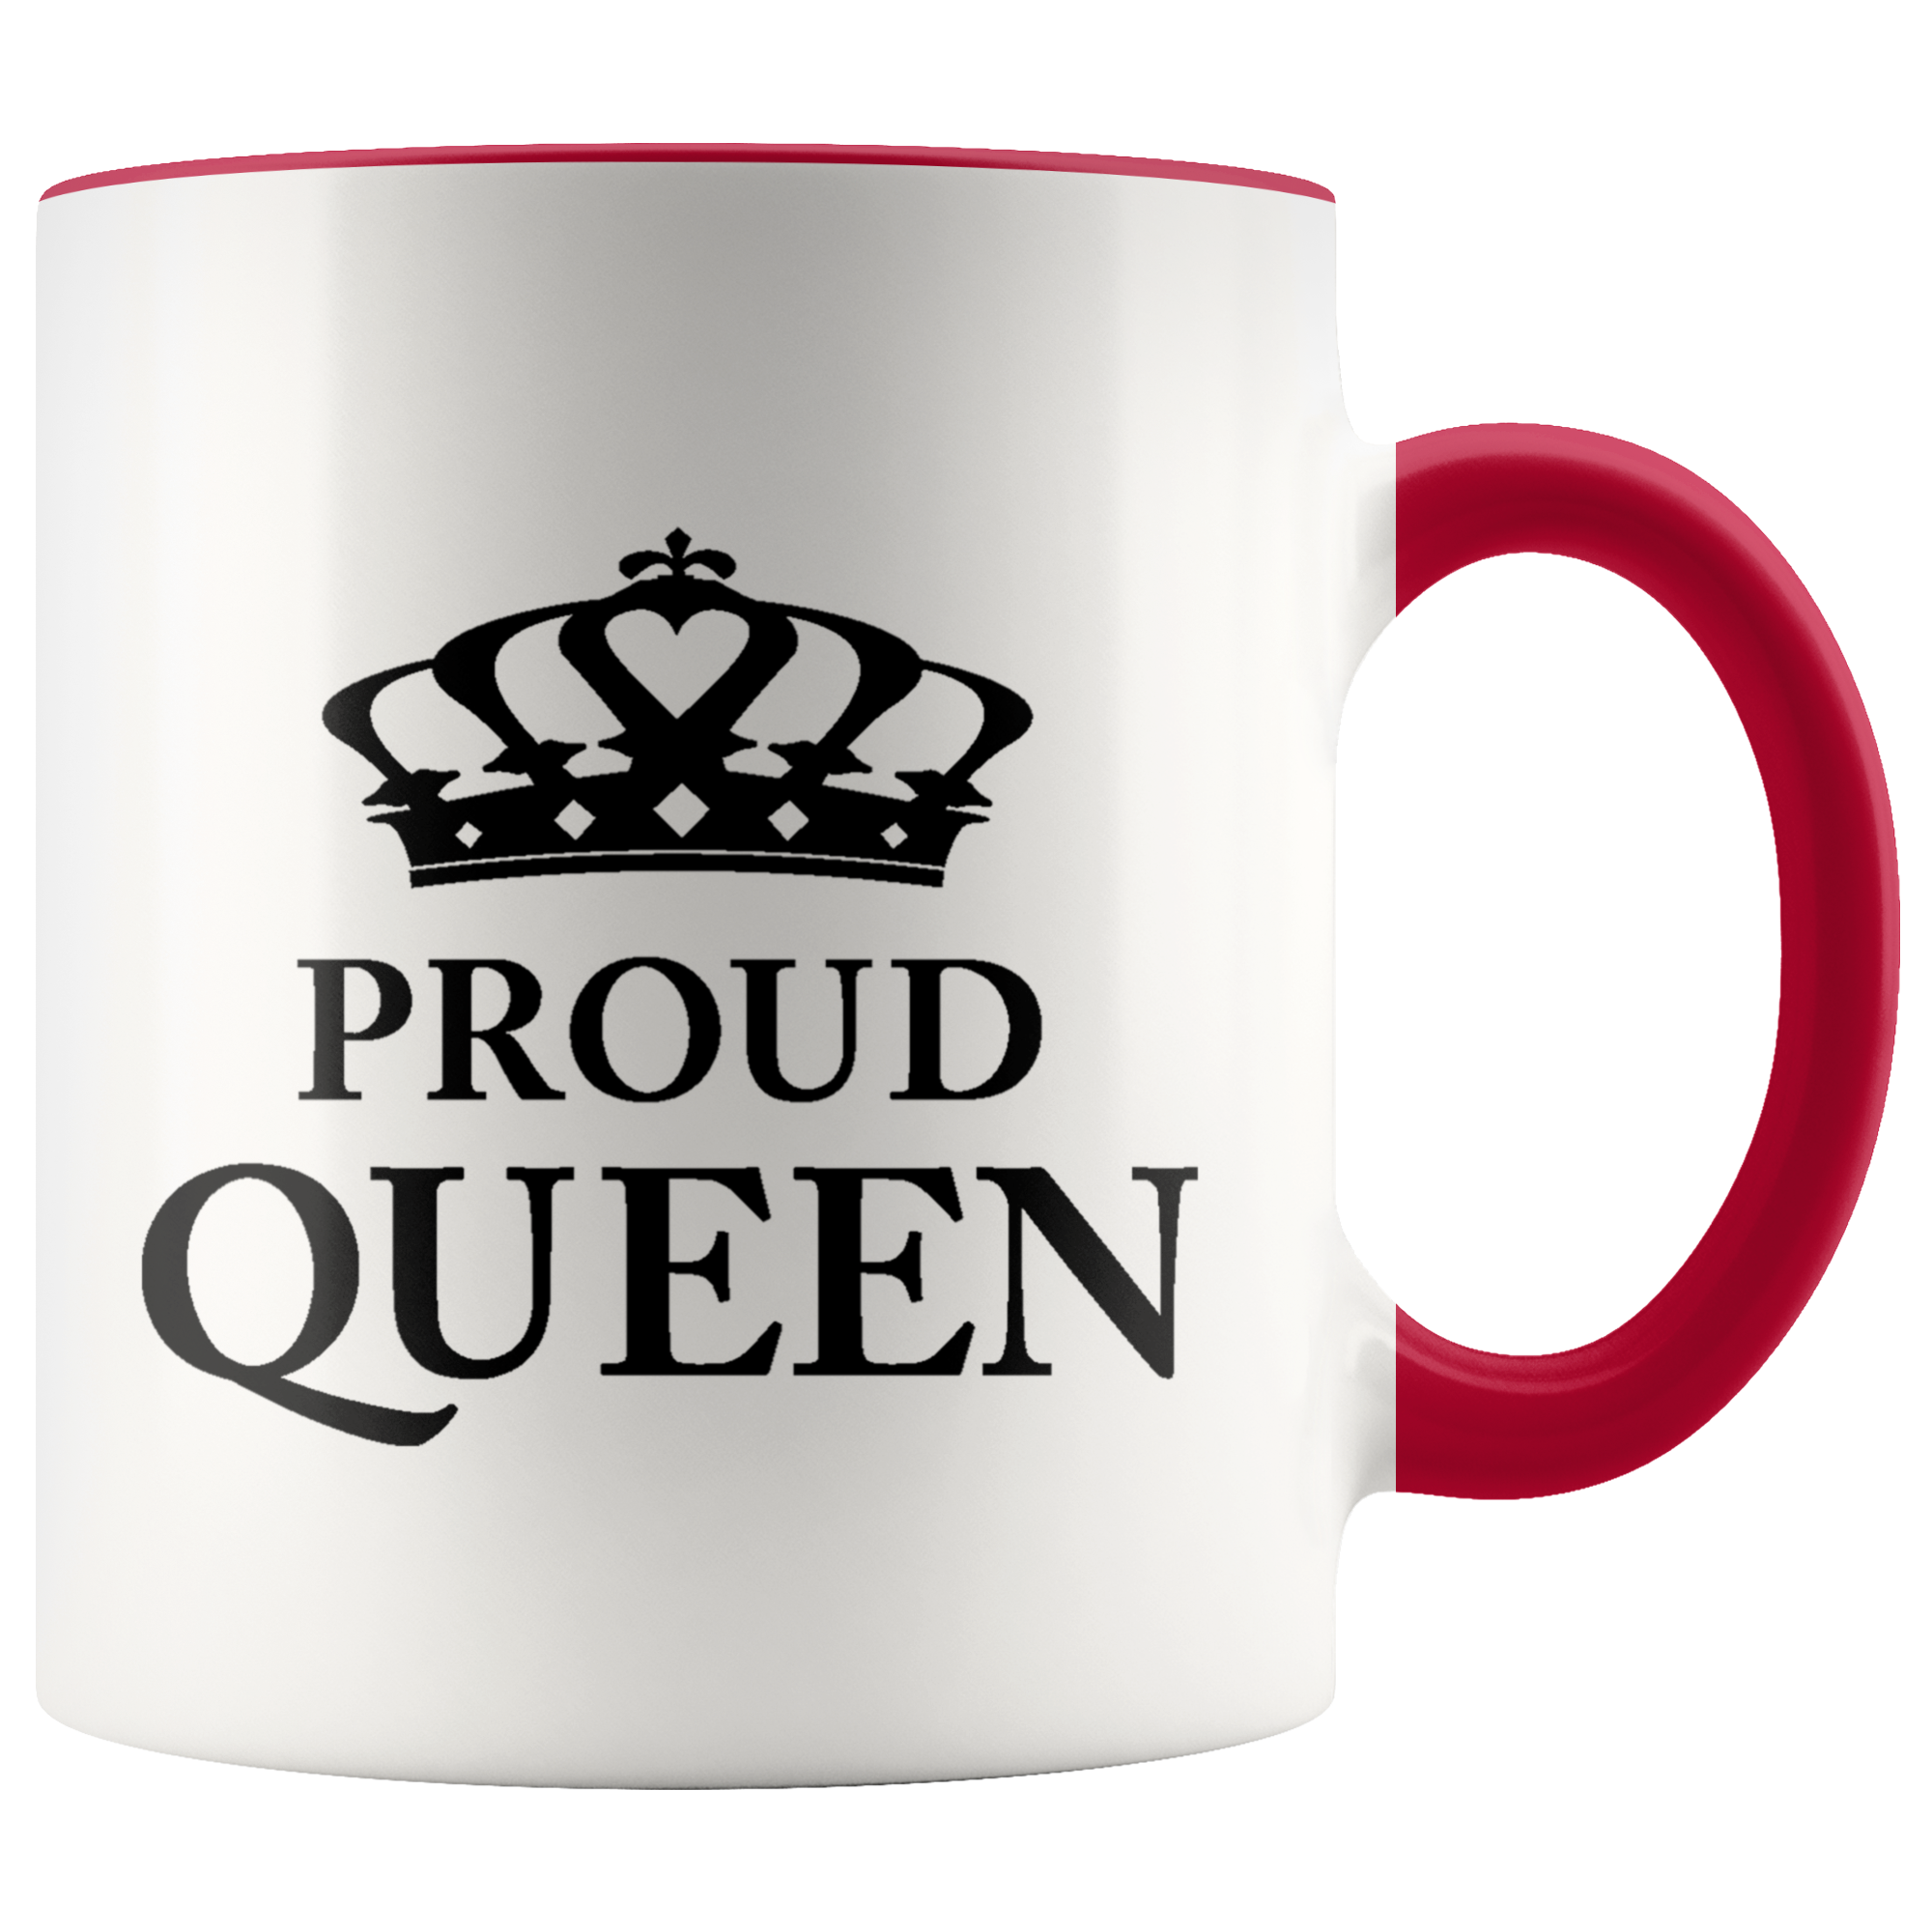 Proud Queen - Accent Mug (black) - 110z